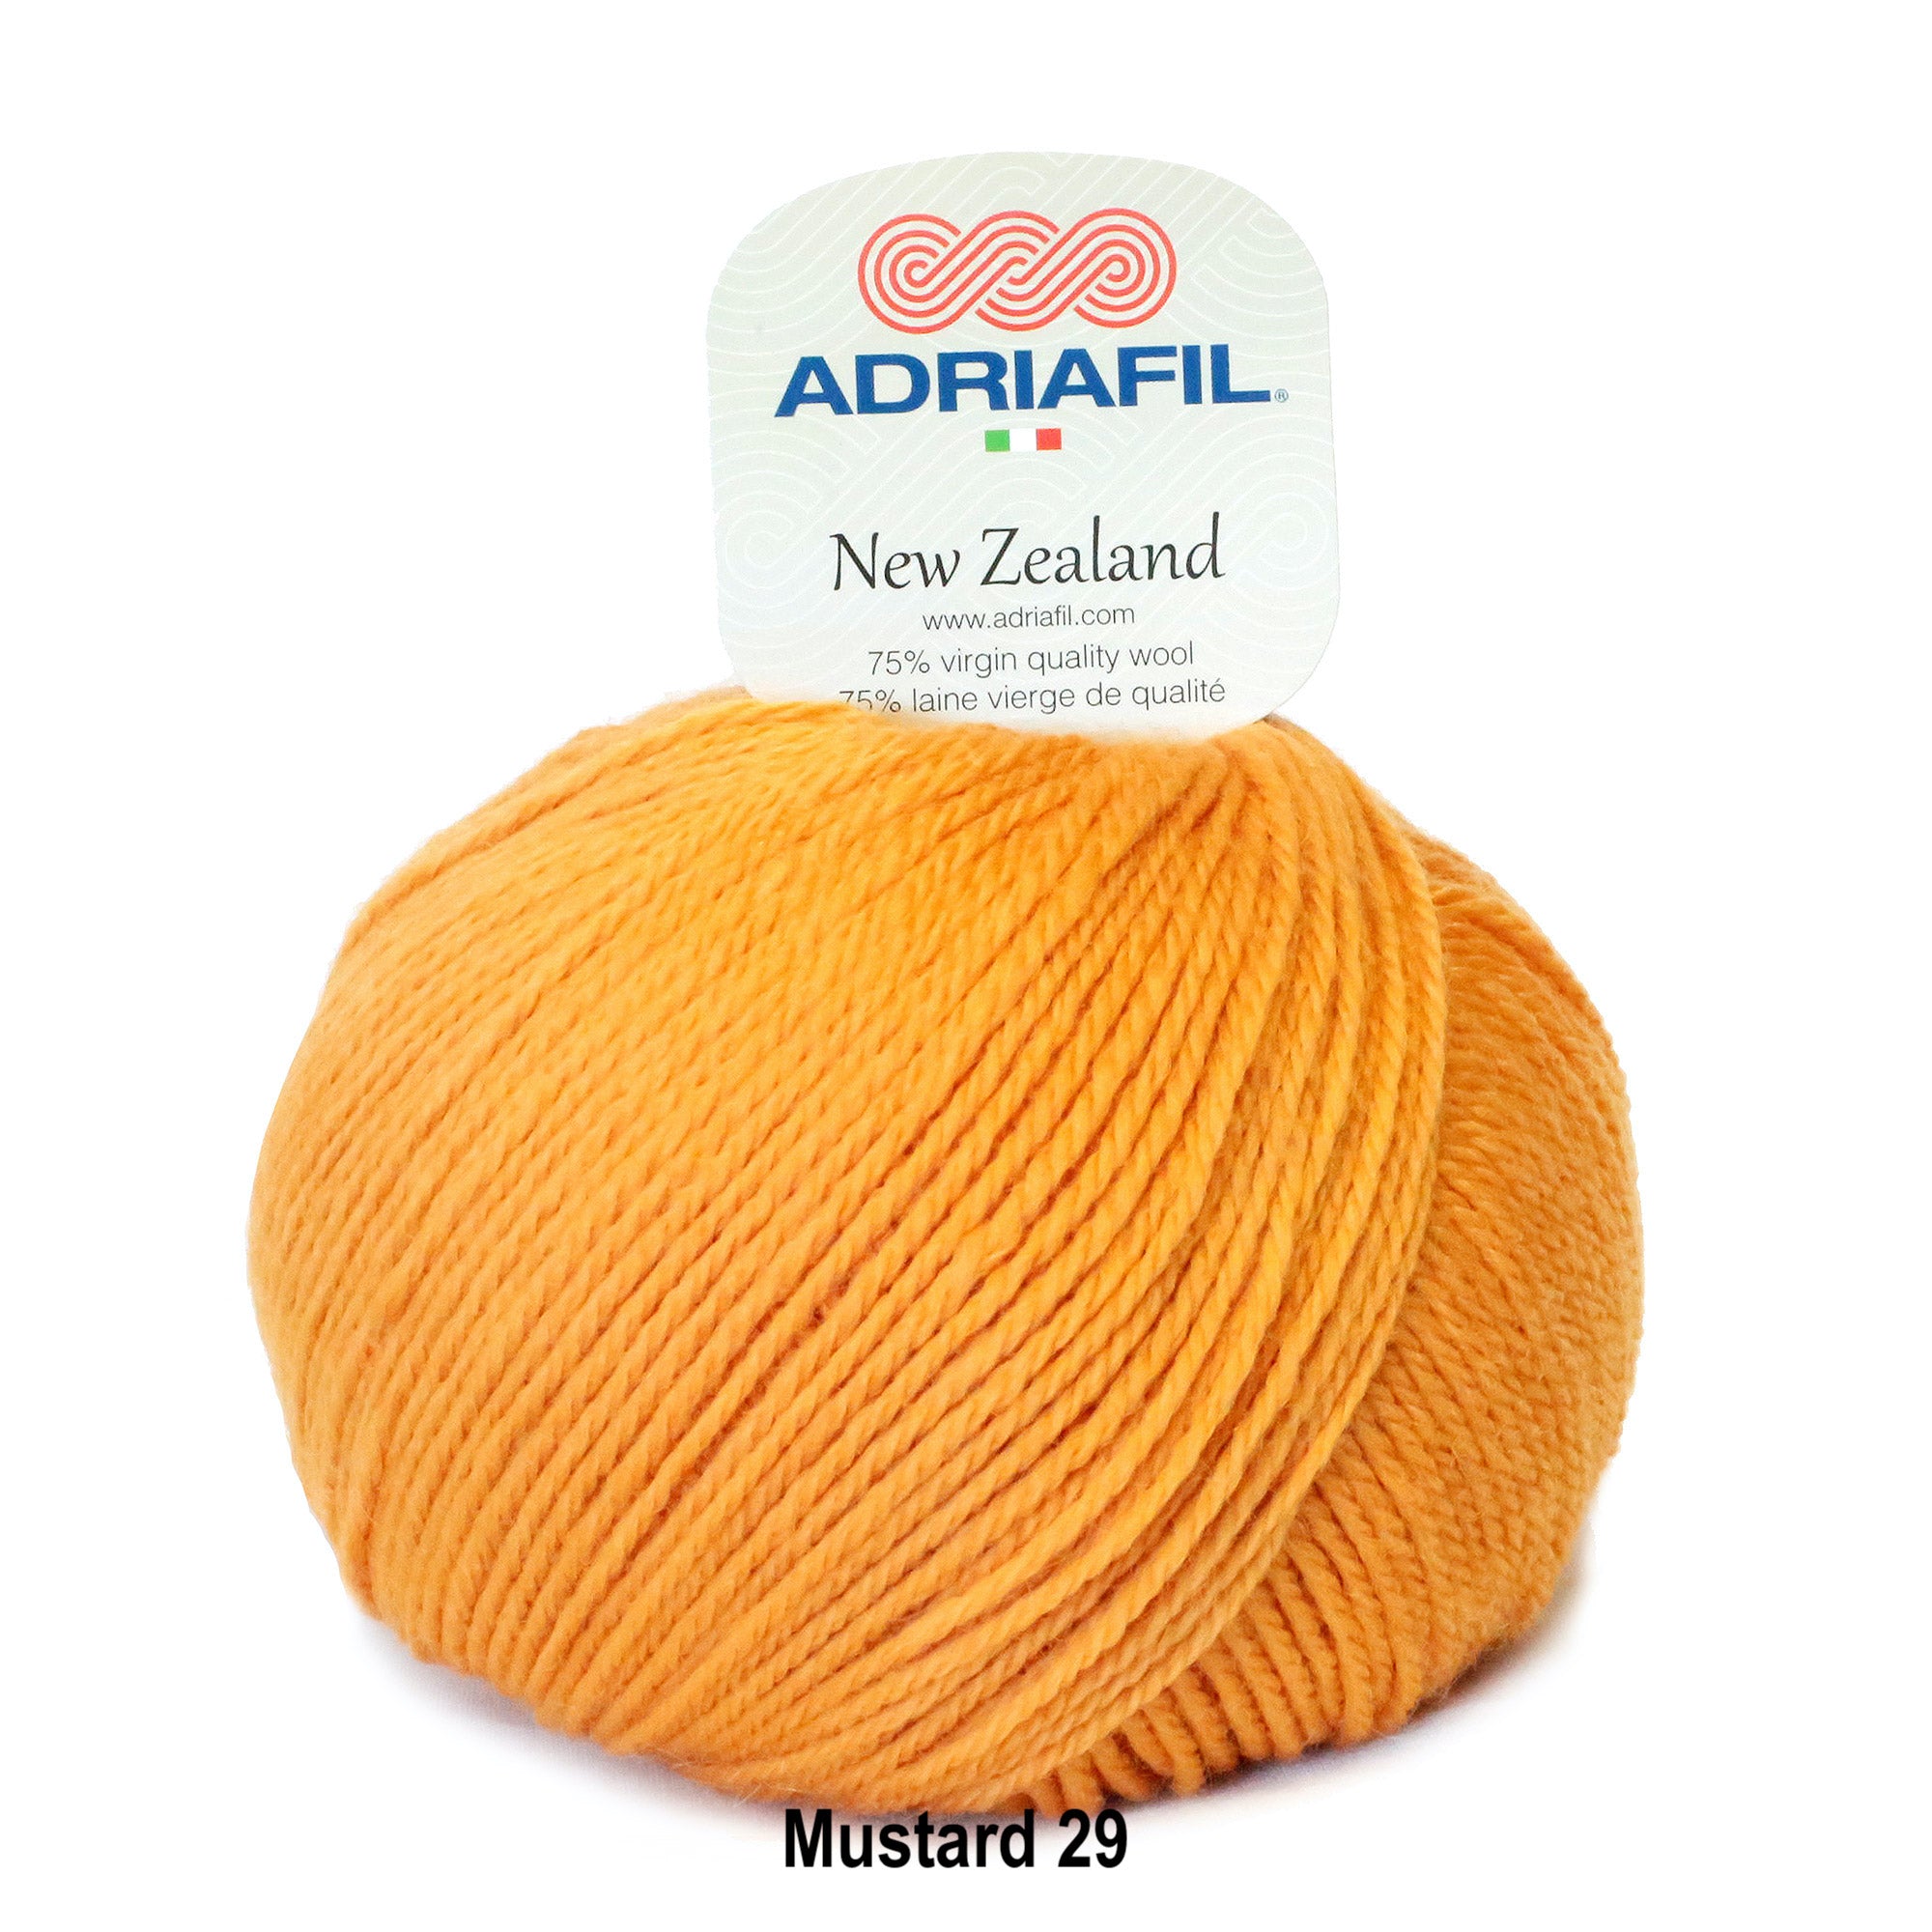 Adriafil New Zealand 75% Wool Aran